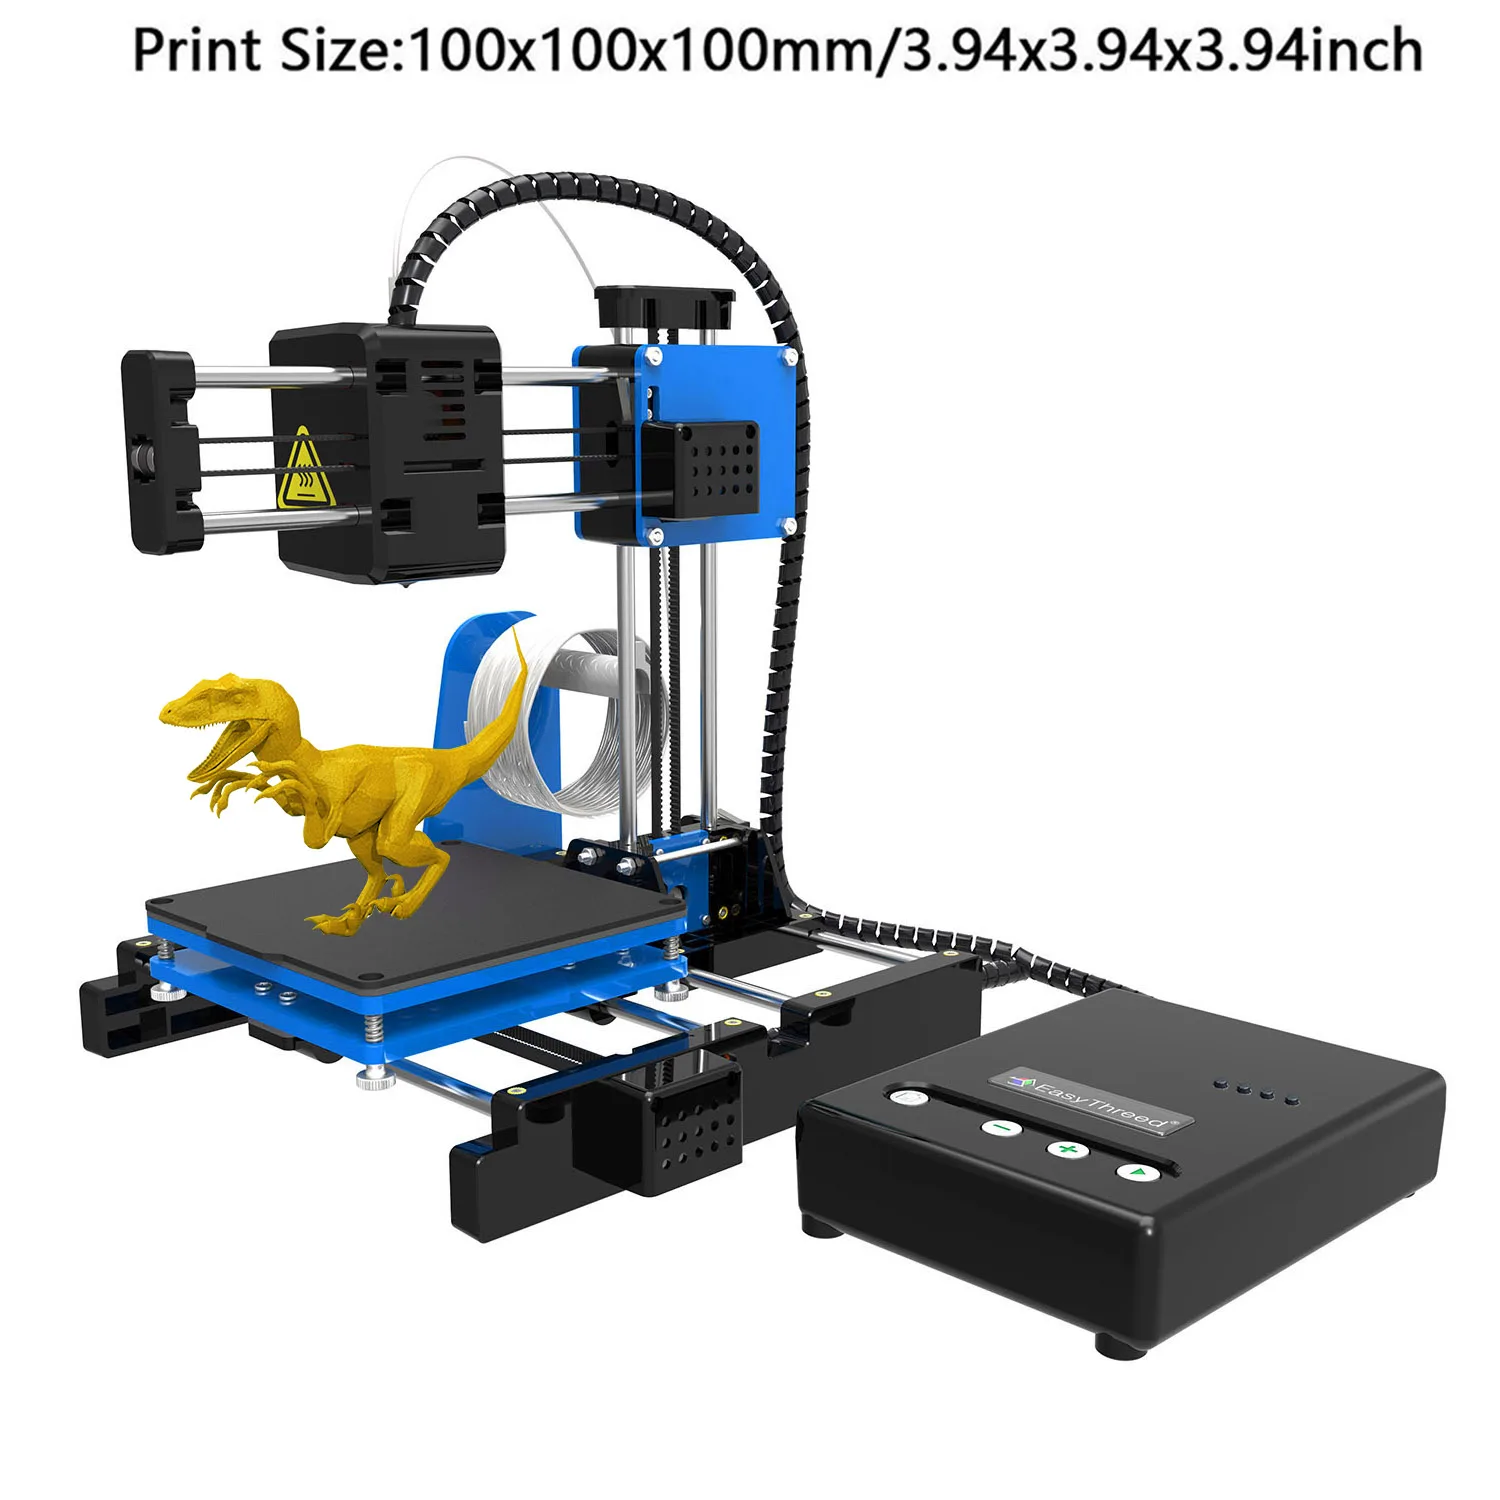 Easythreed Mini stampante 3D X1 bambini facile da usare giocattolo regalo  educativo stampante 3d FDM a basso costo PLA TPU filamento da 1.75mm -  AliExpress